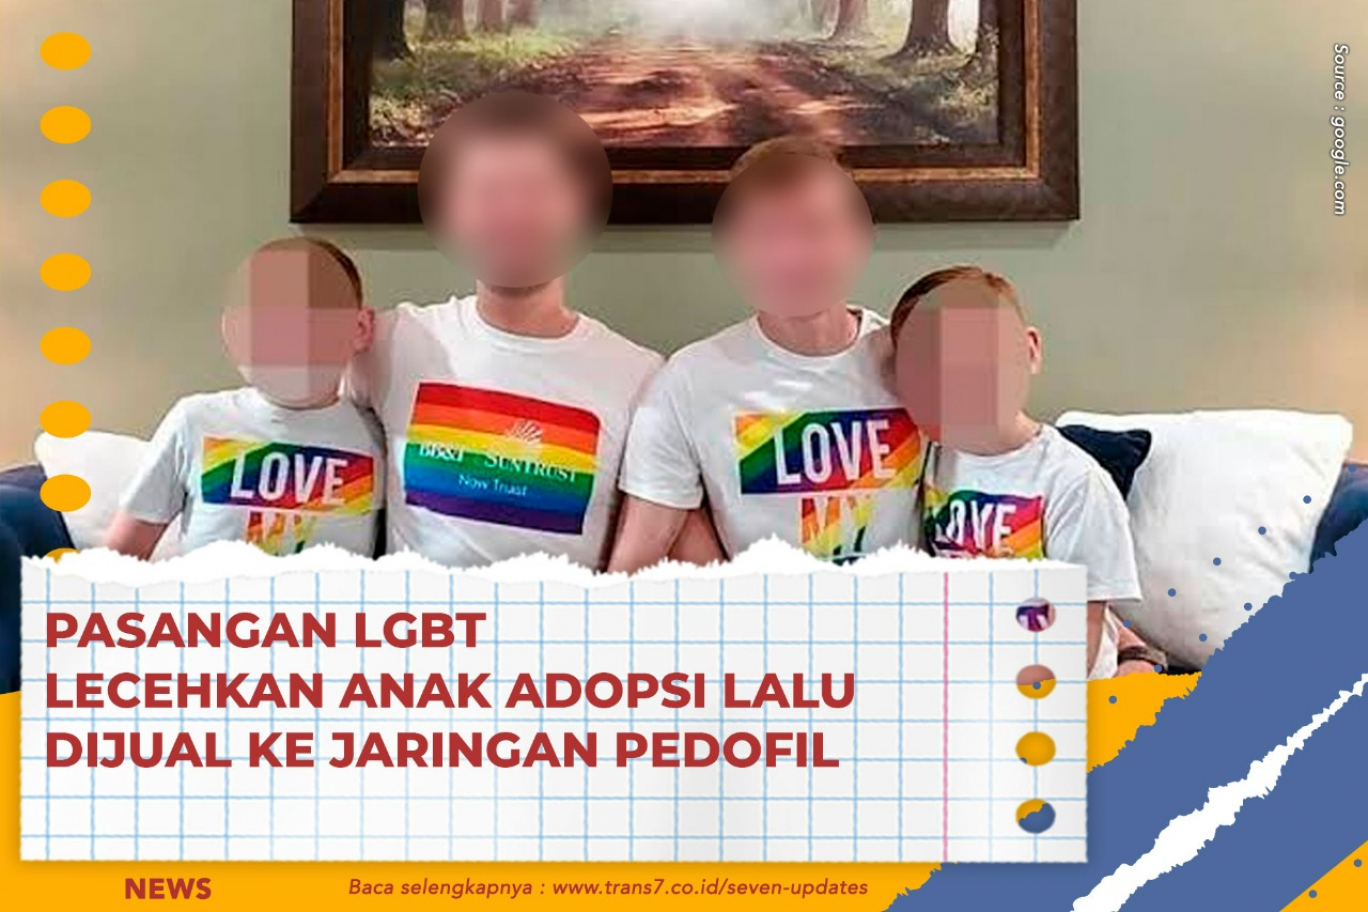 Pasangan LGBT Perkosa Anak Adopsi Lalu Dijual Ke Jaringan Pedofil